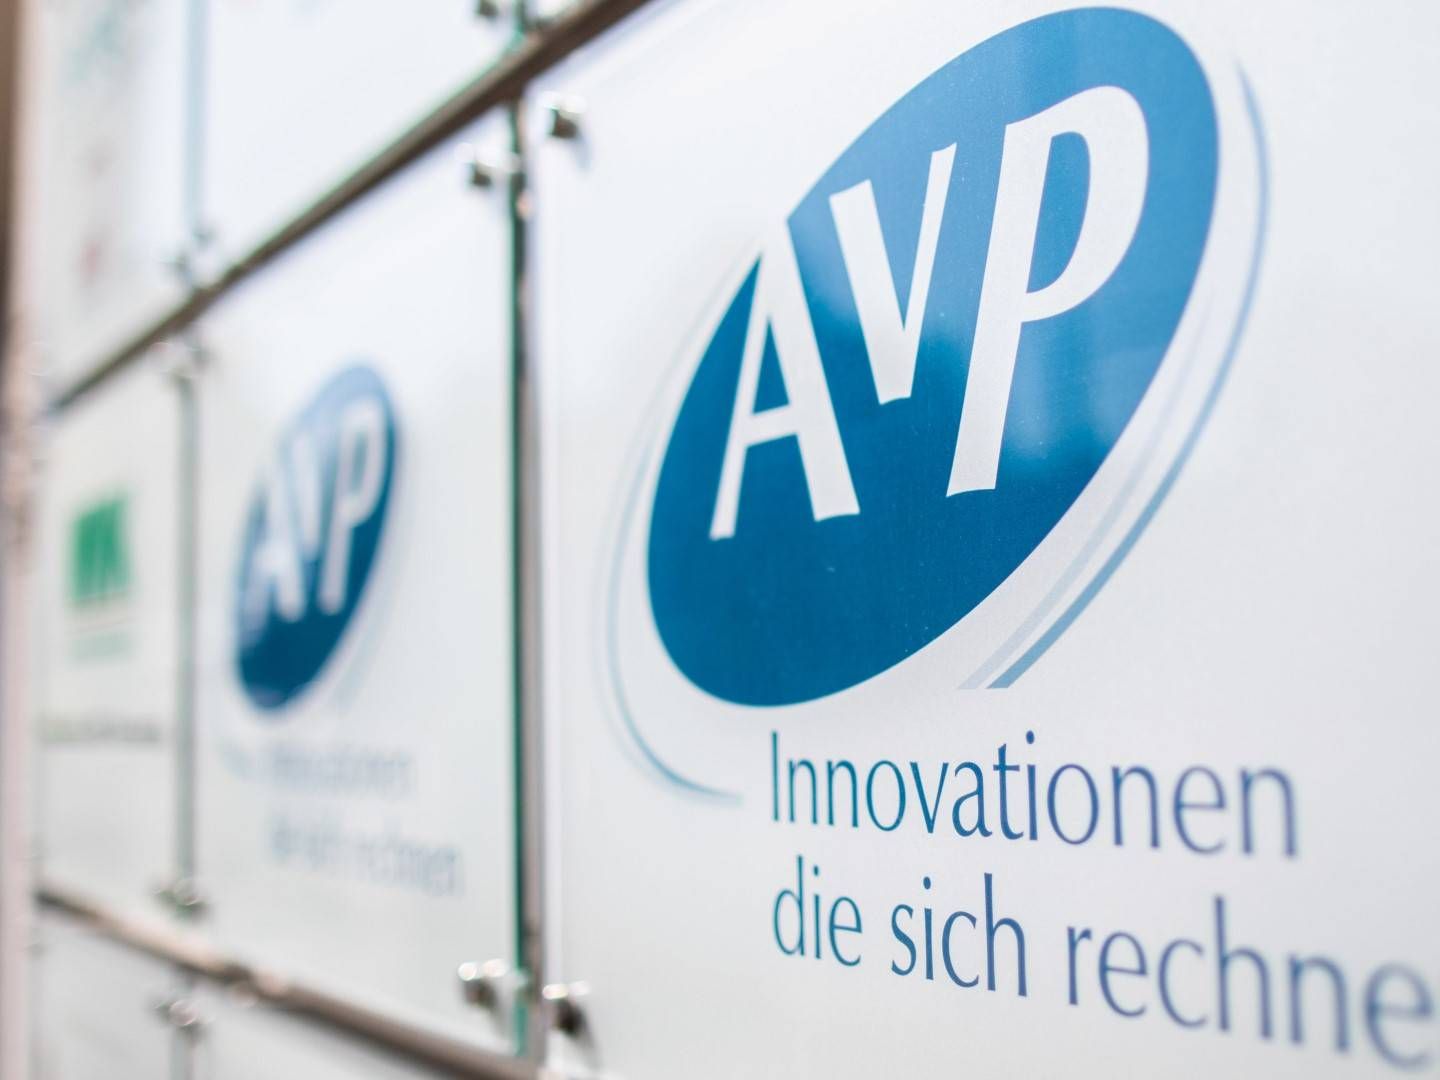 Das Firmenschild des Apothekenrechenzentrums "AvP" hängt vor dem Eingang des Gebäudes in Düsseldorf | Foto: picture alliance/Marcel Kusch/dpa